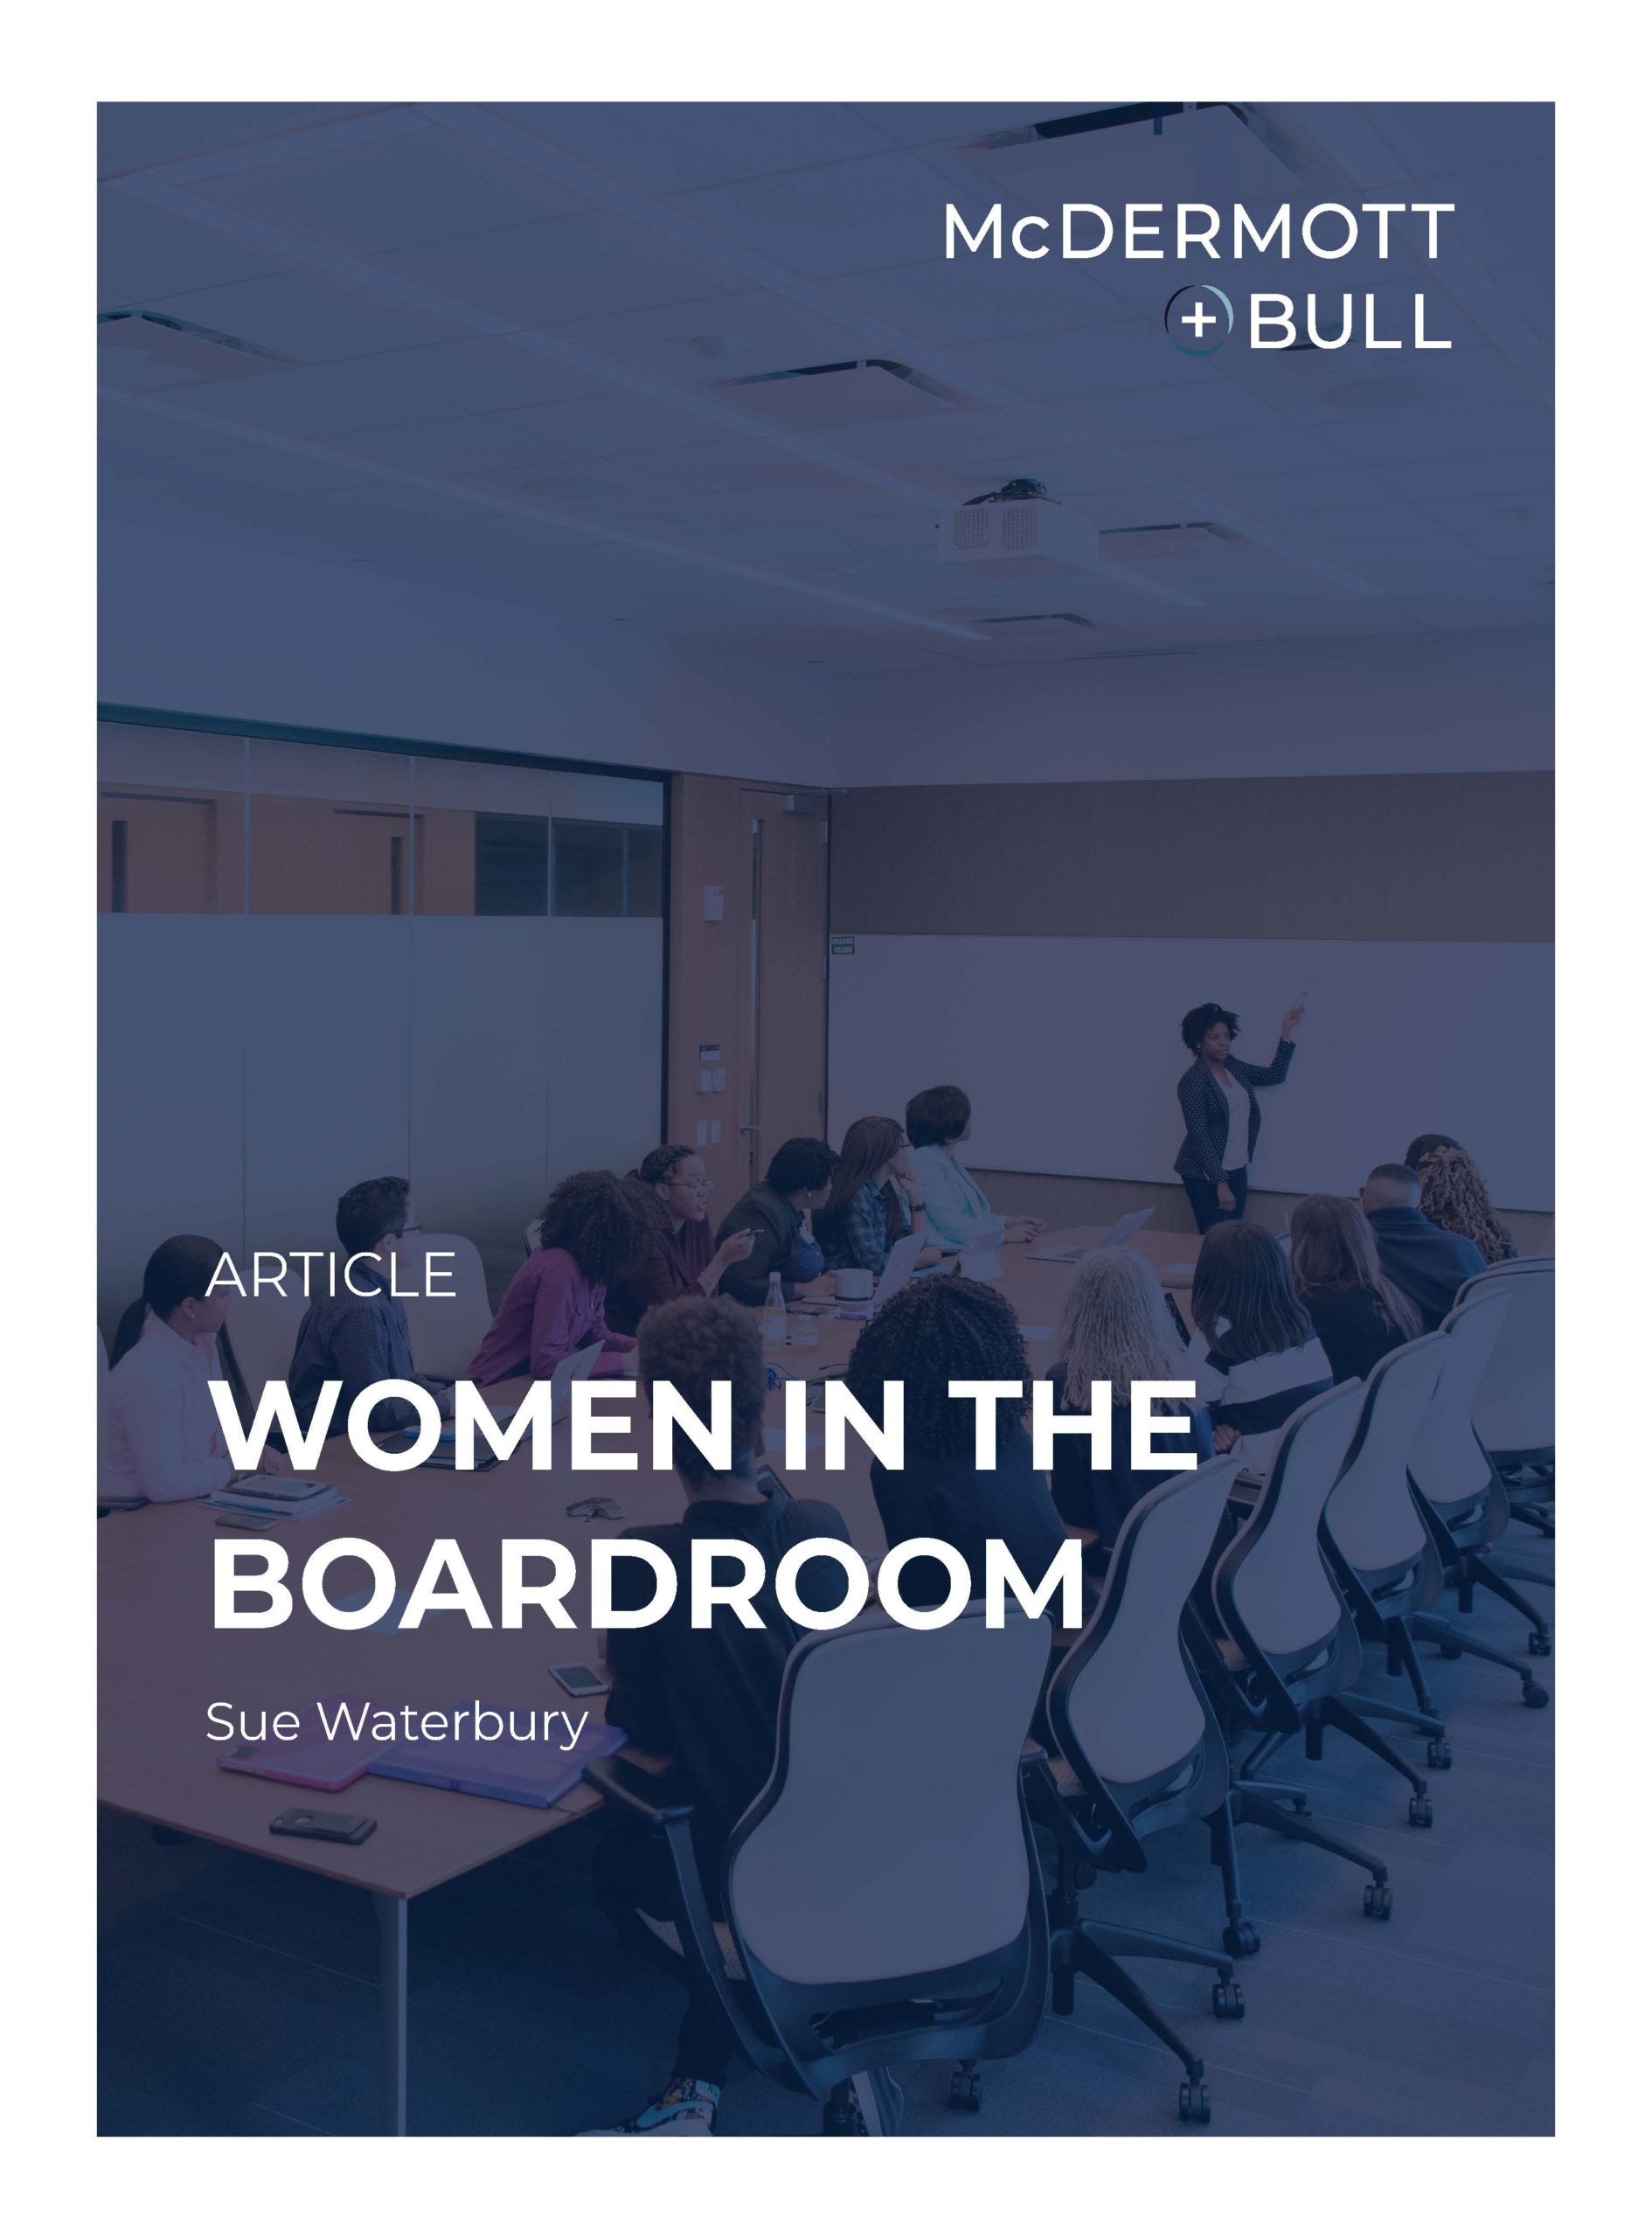 Women in the Boardroom